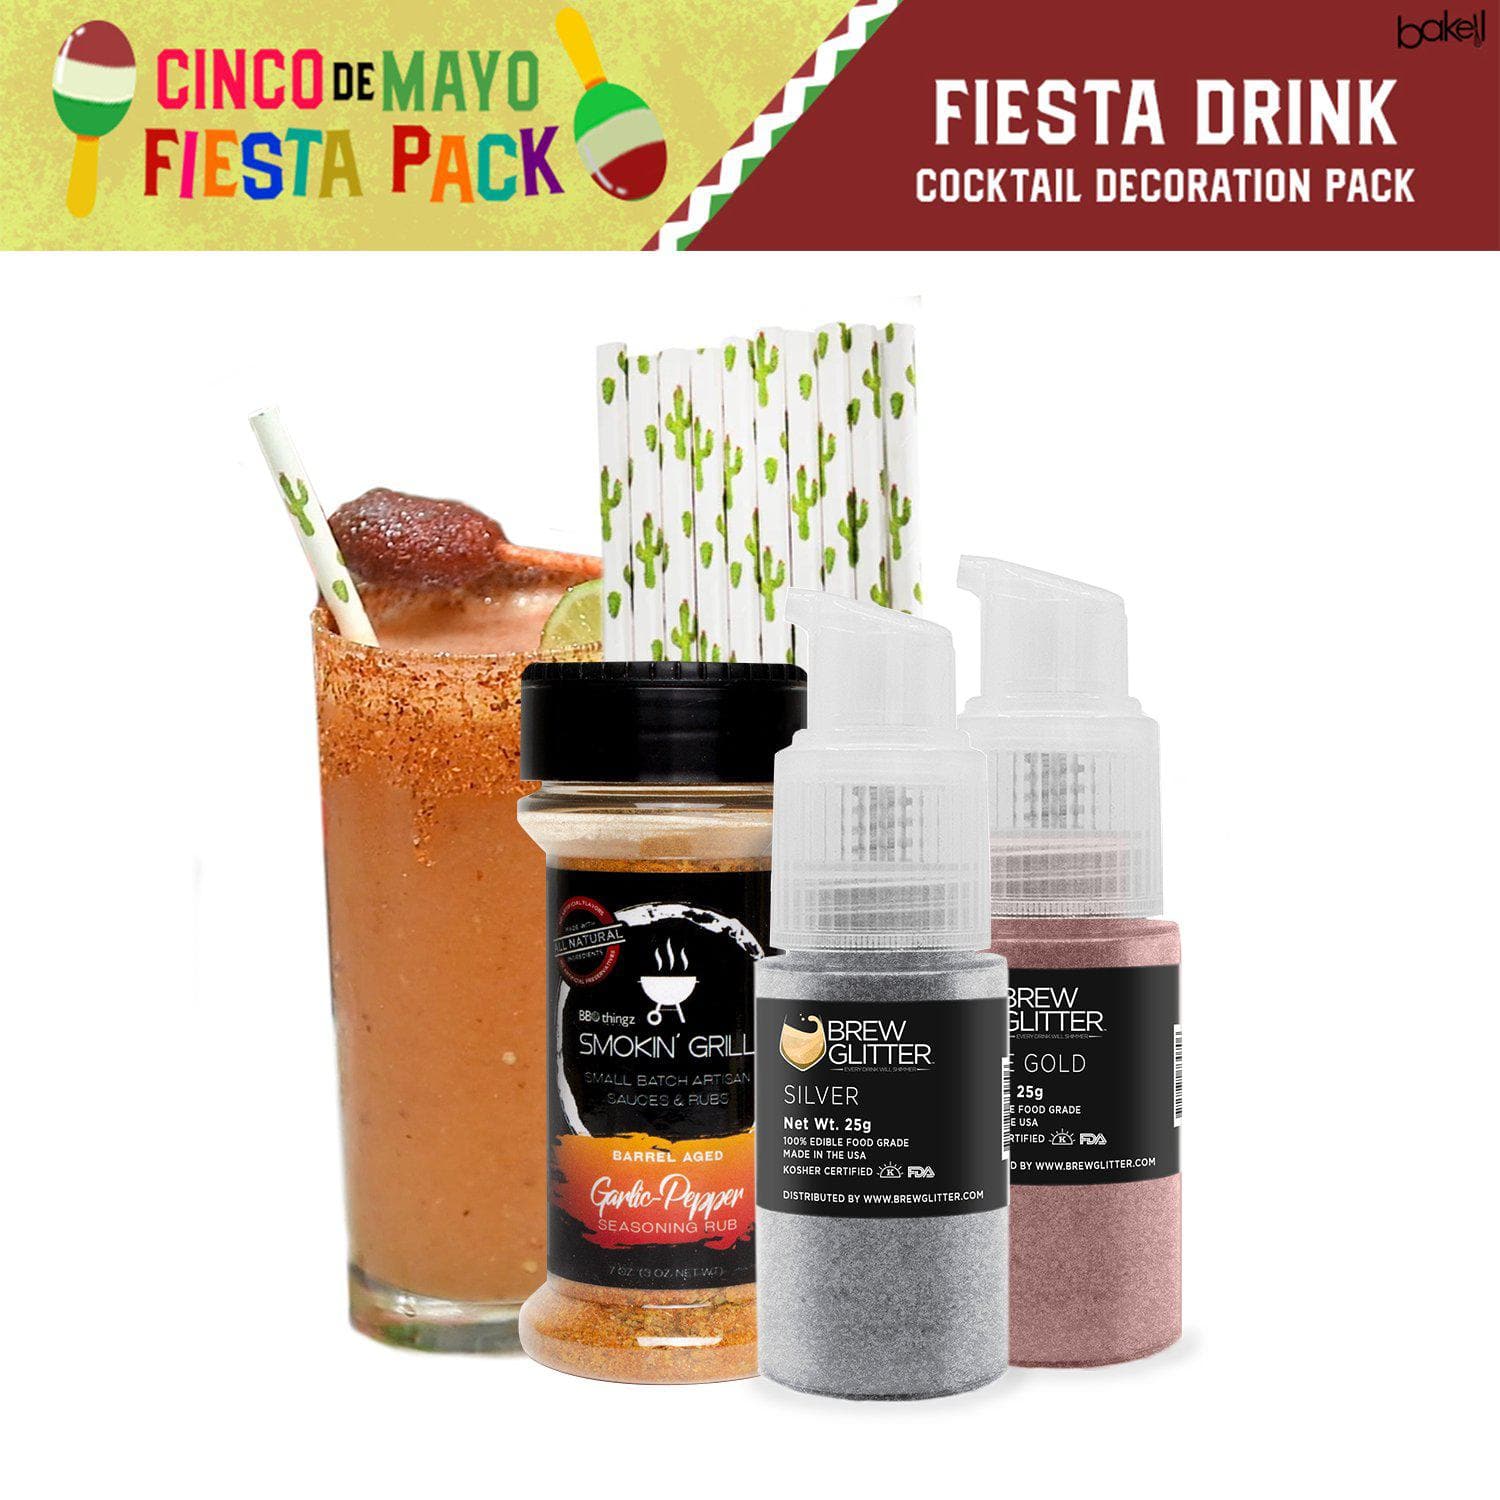 Cinco de Mayo Fiesta Drink Cocktail Decoration Pack Gift Set (4 PC SET)-Cinco de Mayo_Gift Set-bakell